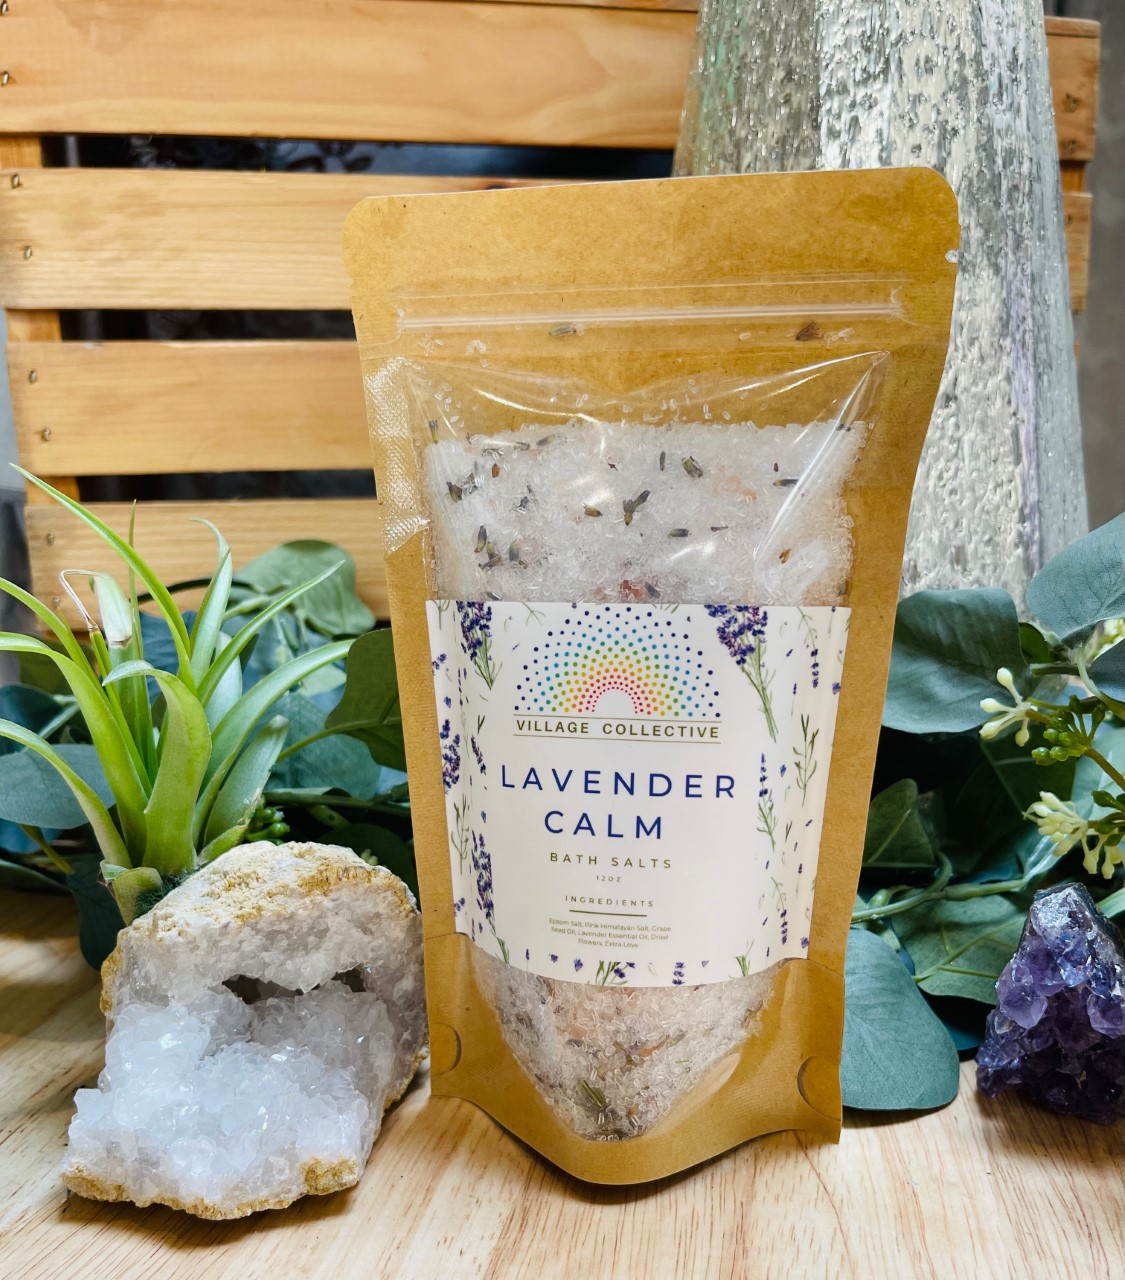 Village Collective Bath Salts - Lavender Calm